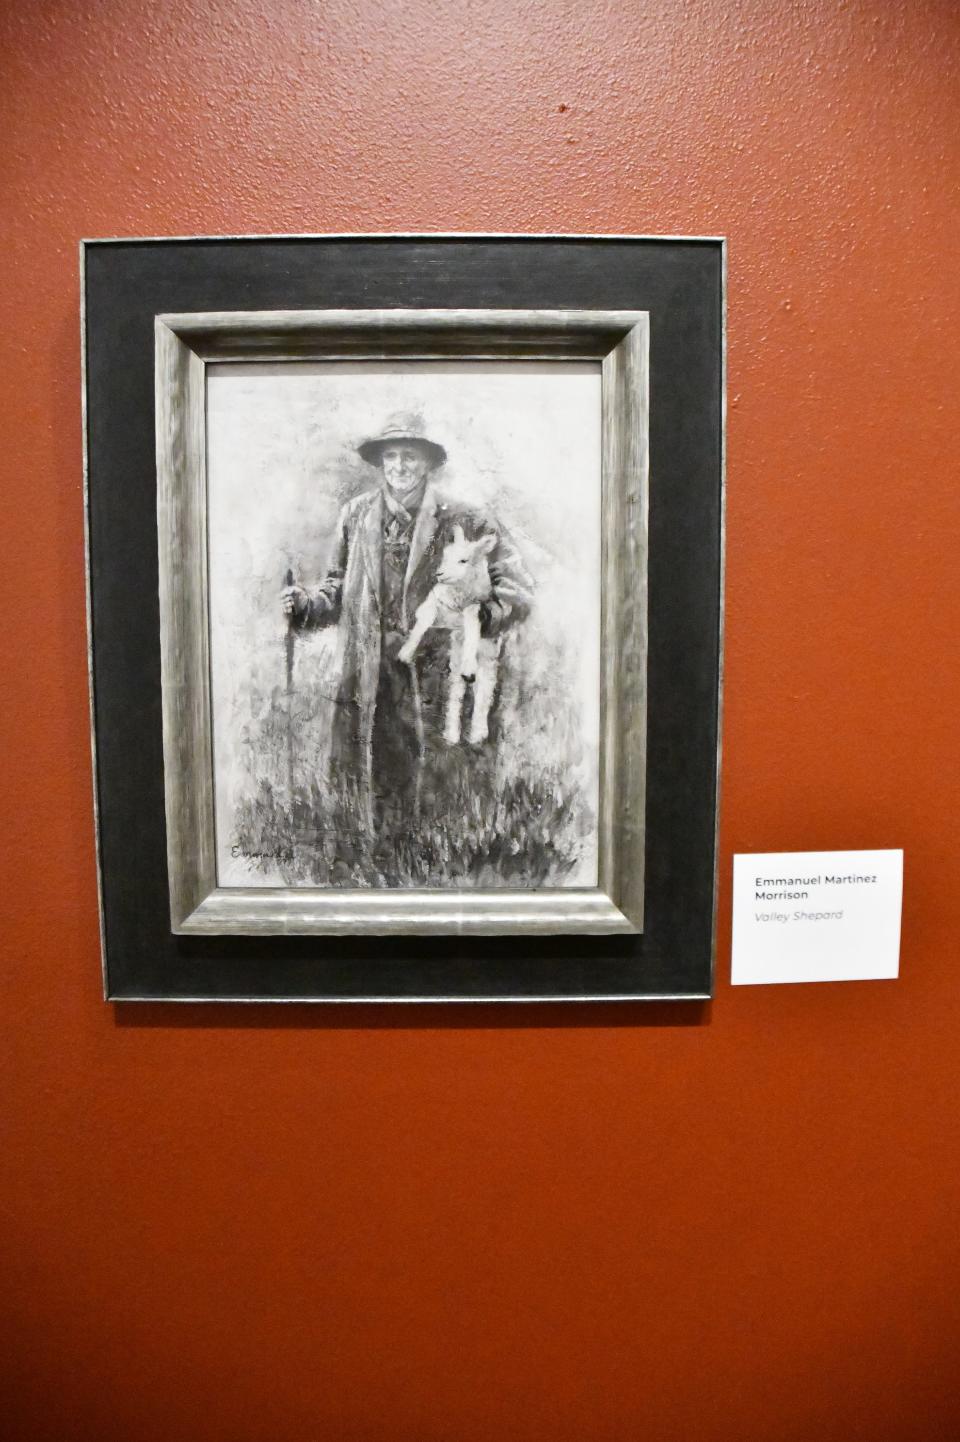 An image by Emanuel Martinez showing a shepherd holding a lamb is part of the Hecho en Colorado exhibit at El Pueblo History Museum in Pueblo, Colo.